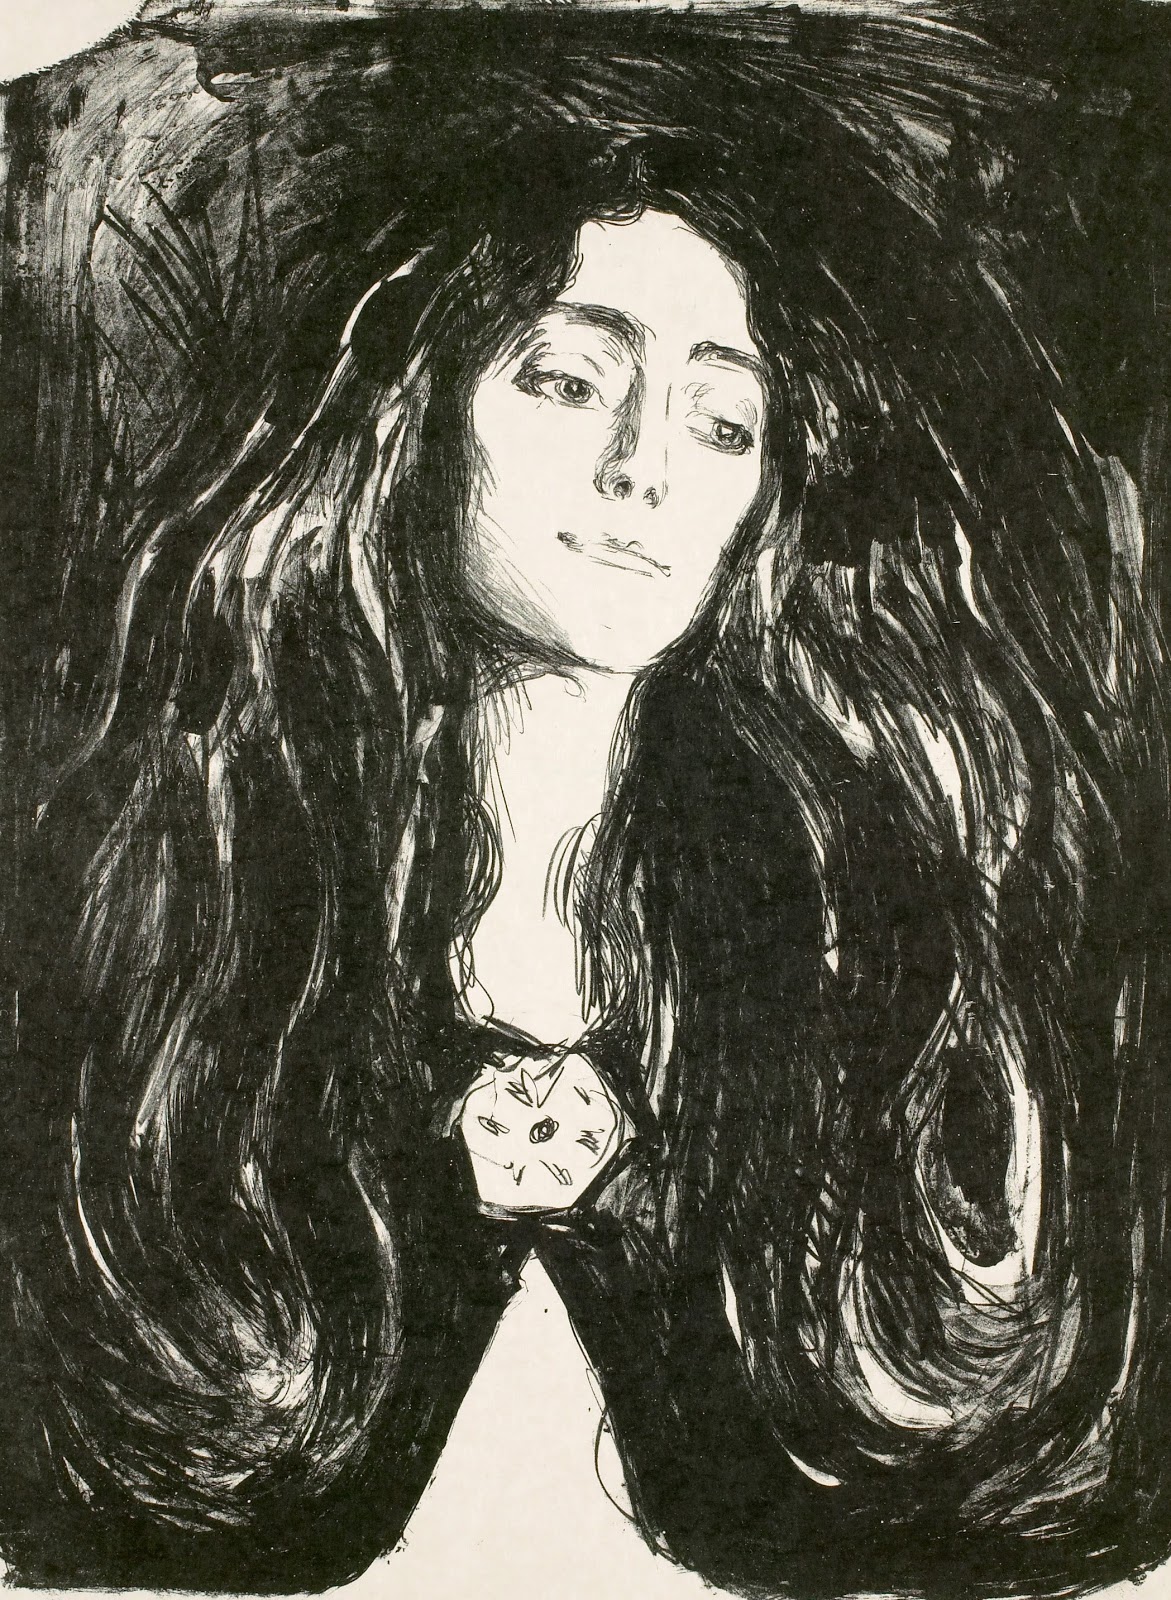 Edvard+Munch-1863-1944 (58).jpg